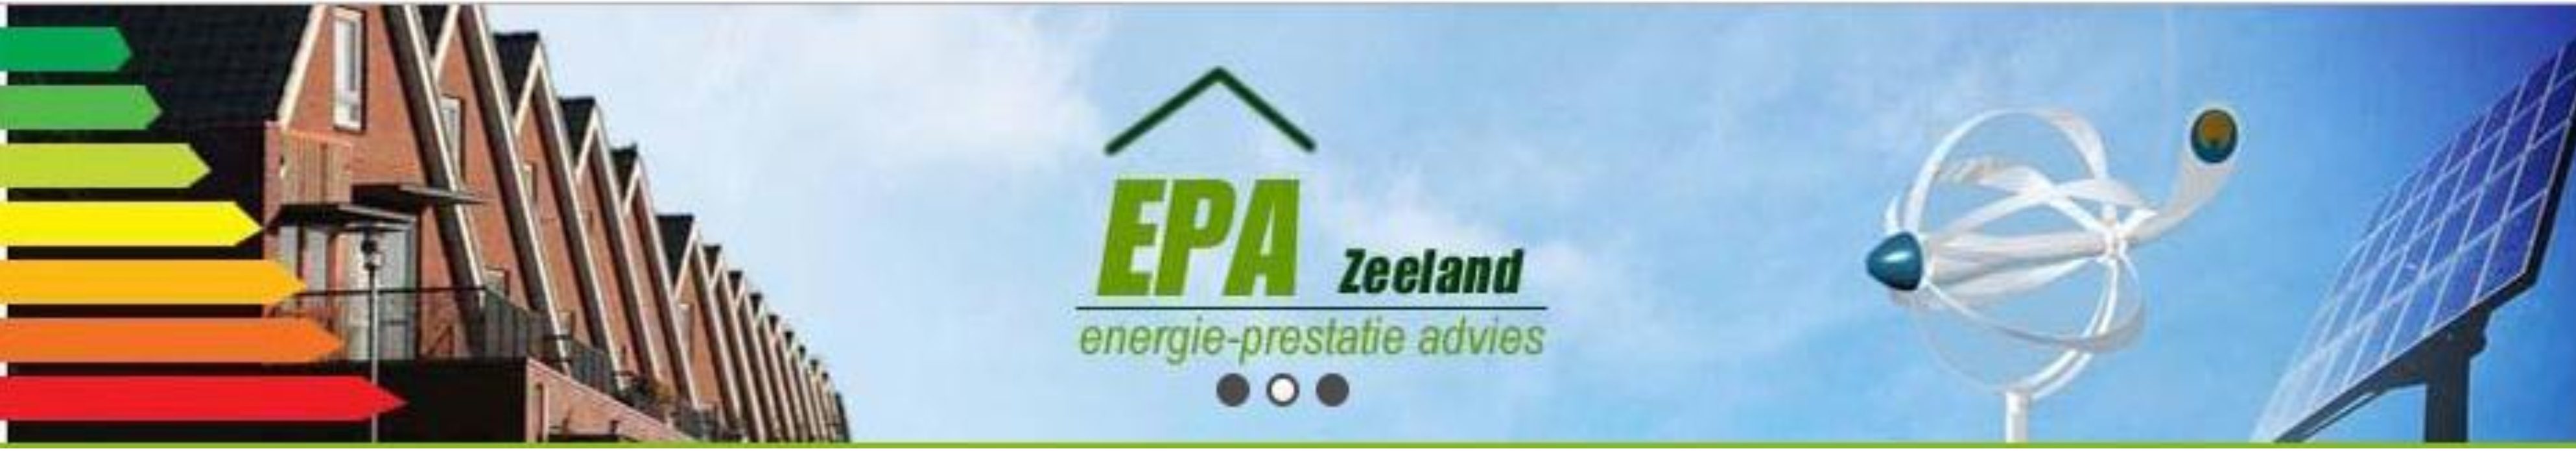 EPA Zeeland